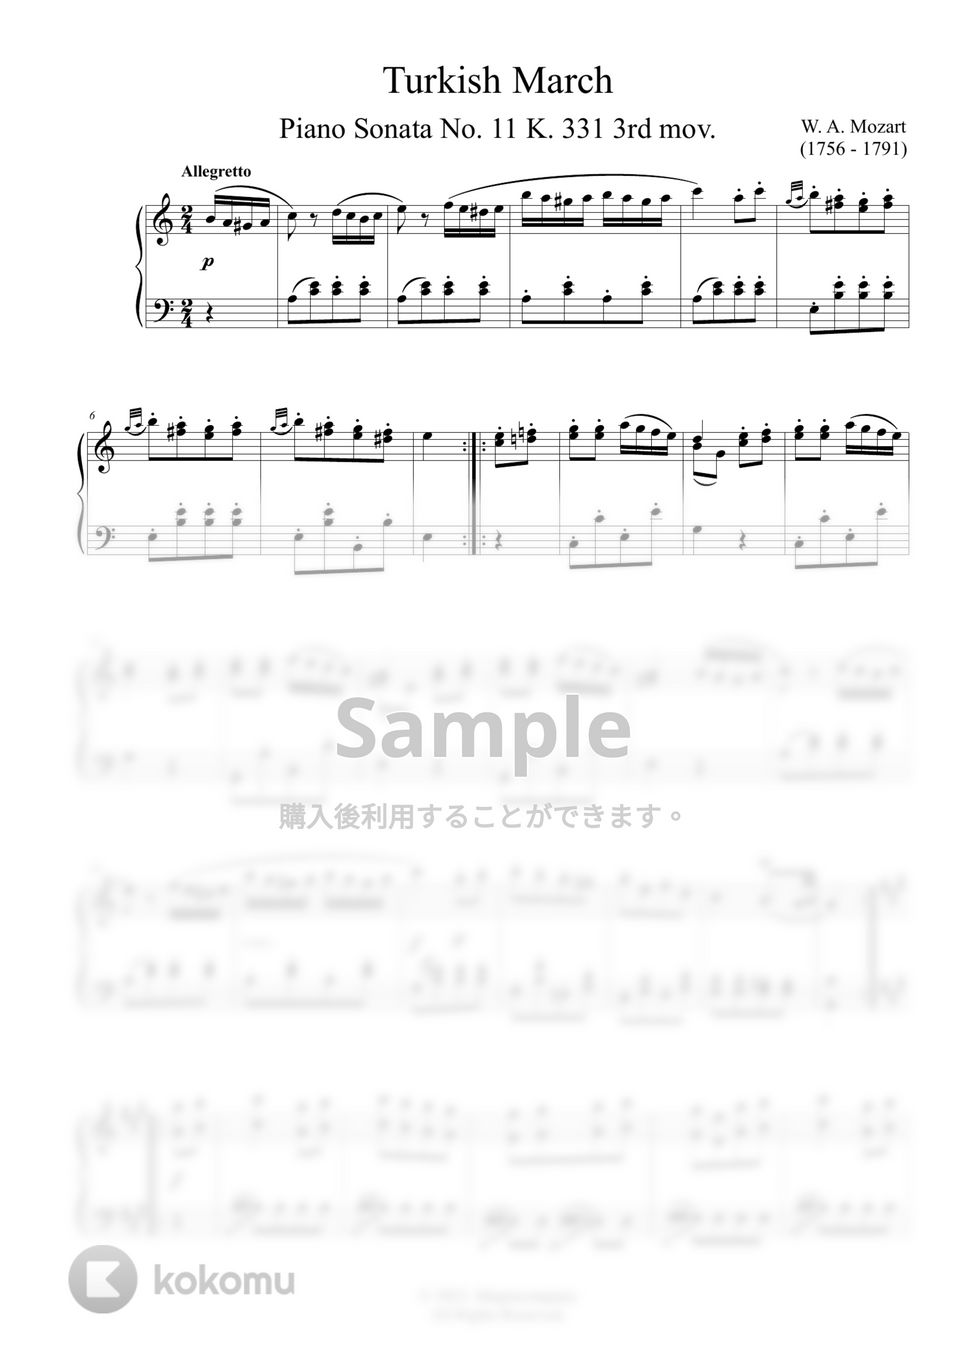 モーツァルト - トルコ行進曲 by ココミュオリジナル